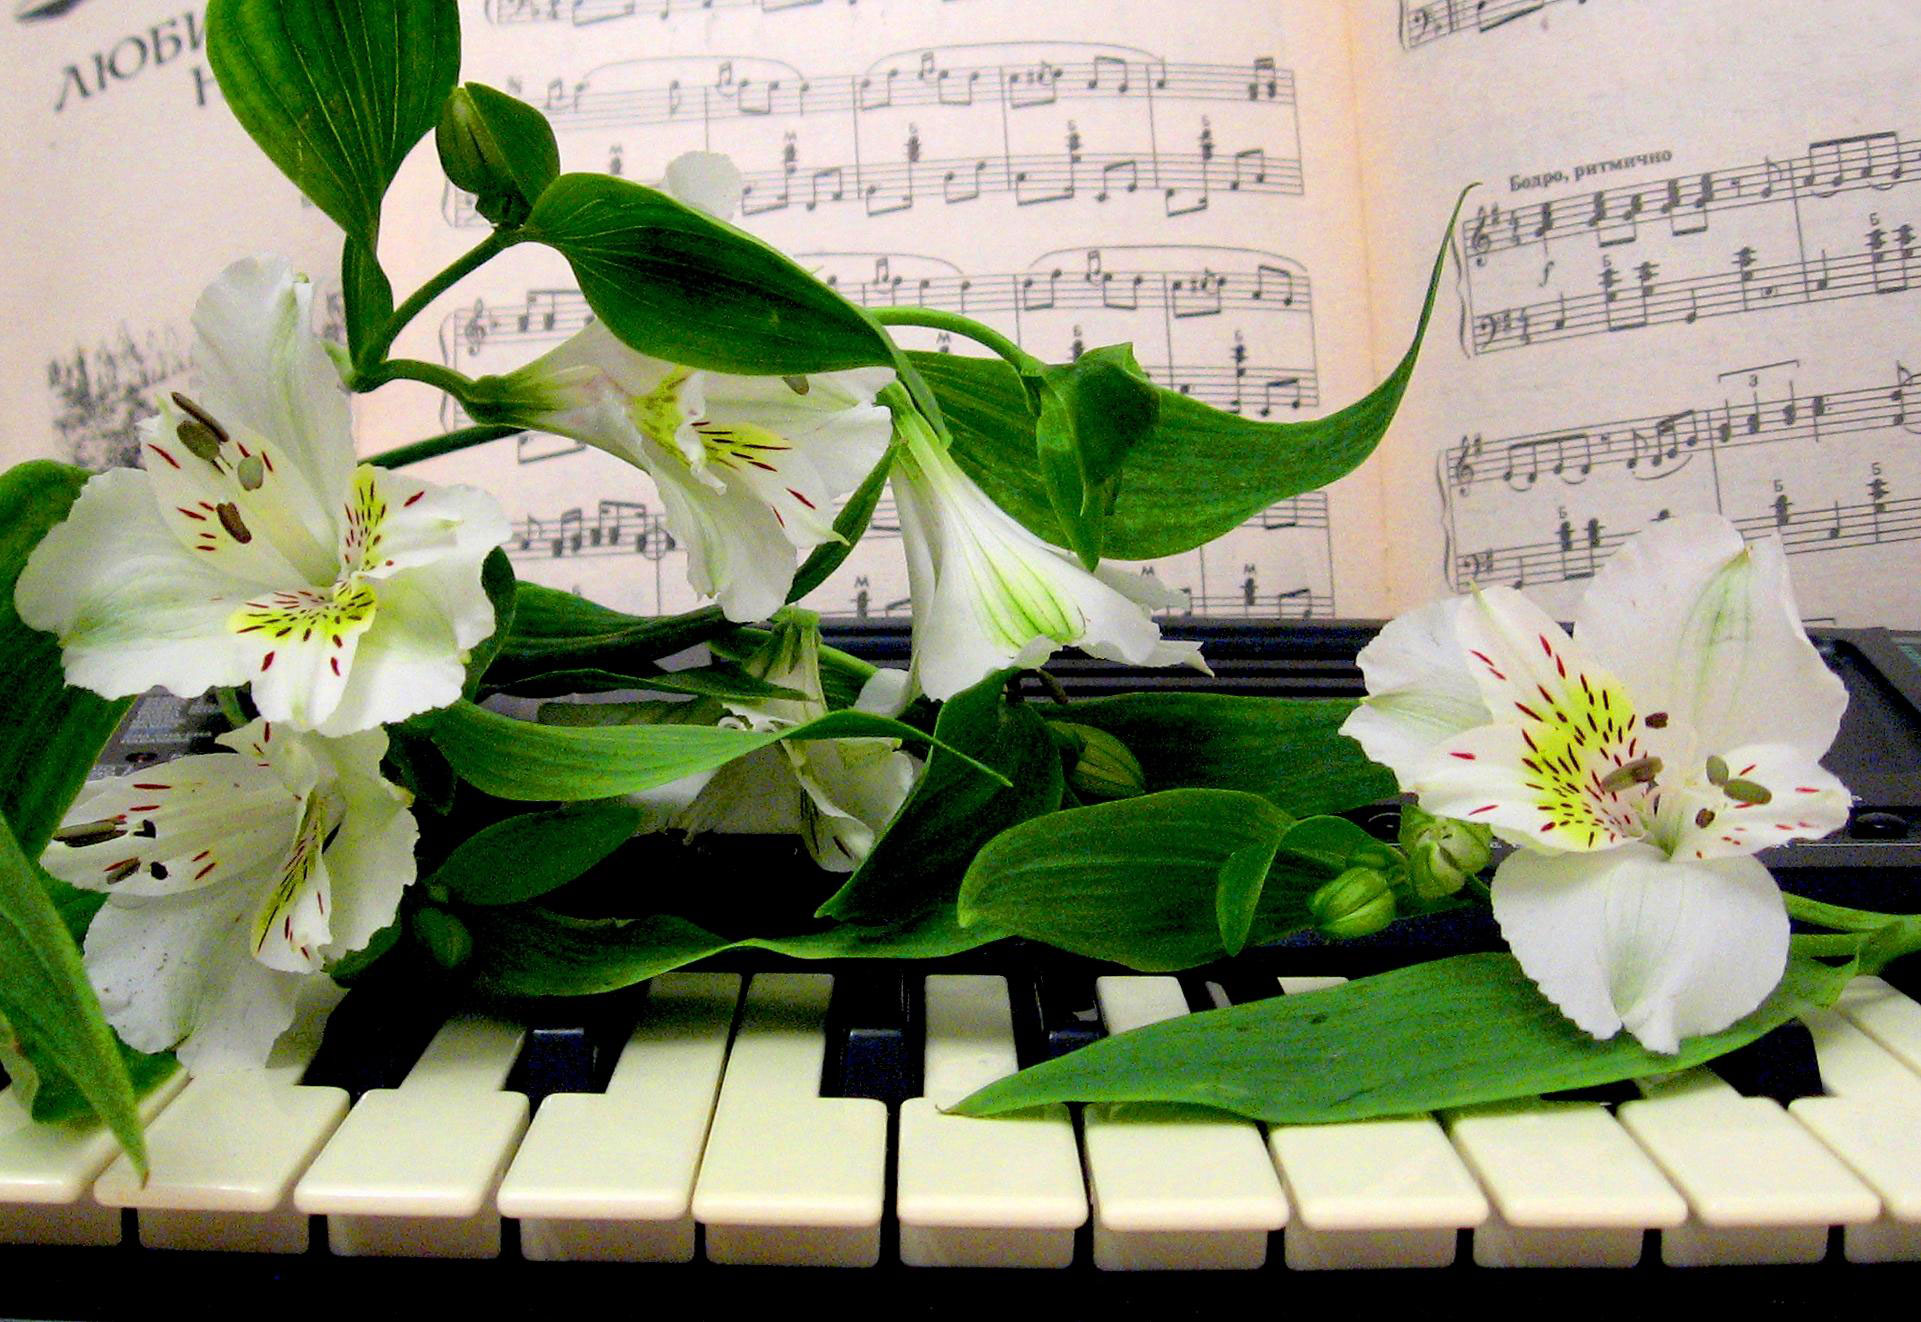 Цветы на пианино для учительницы музыки